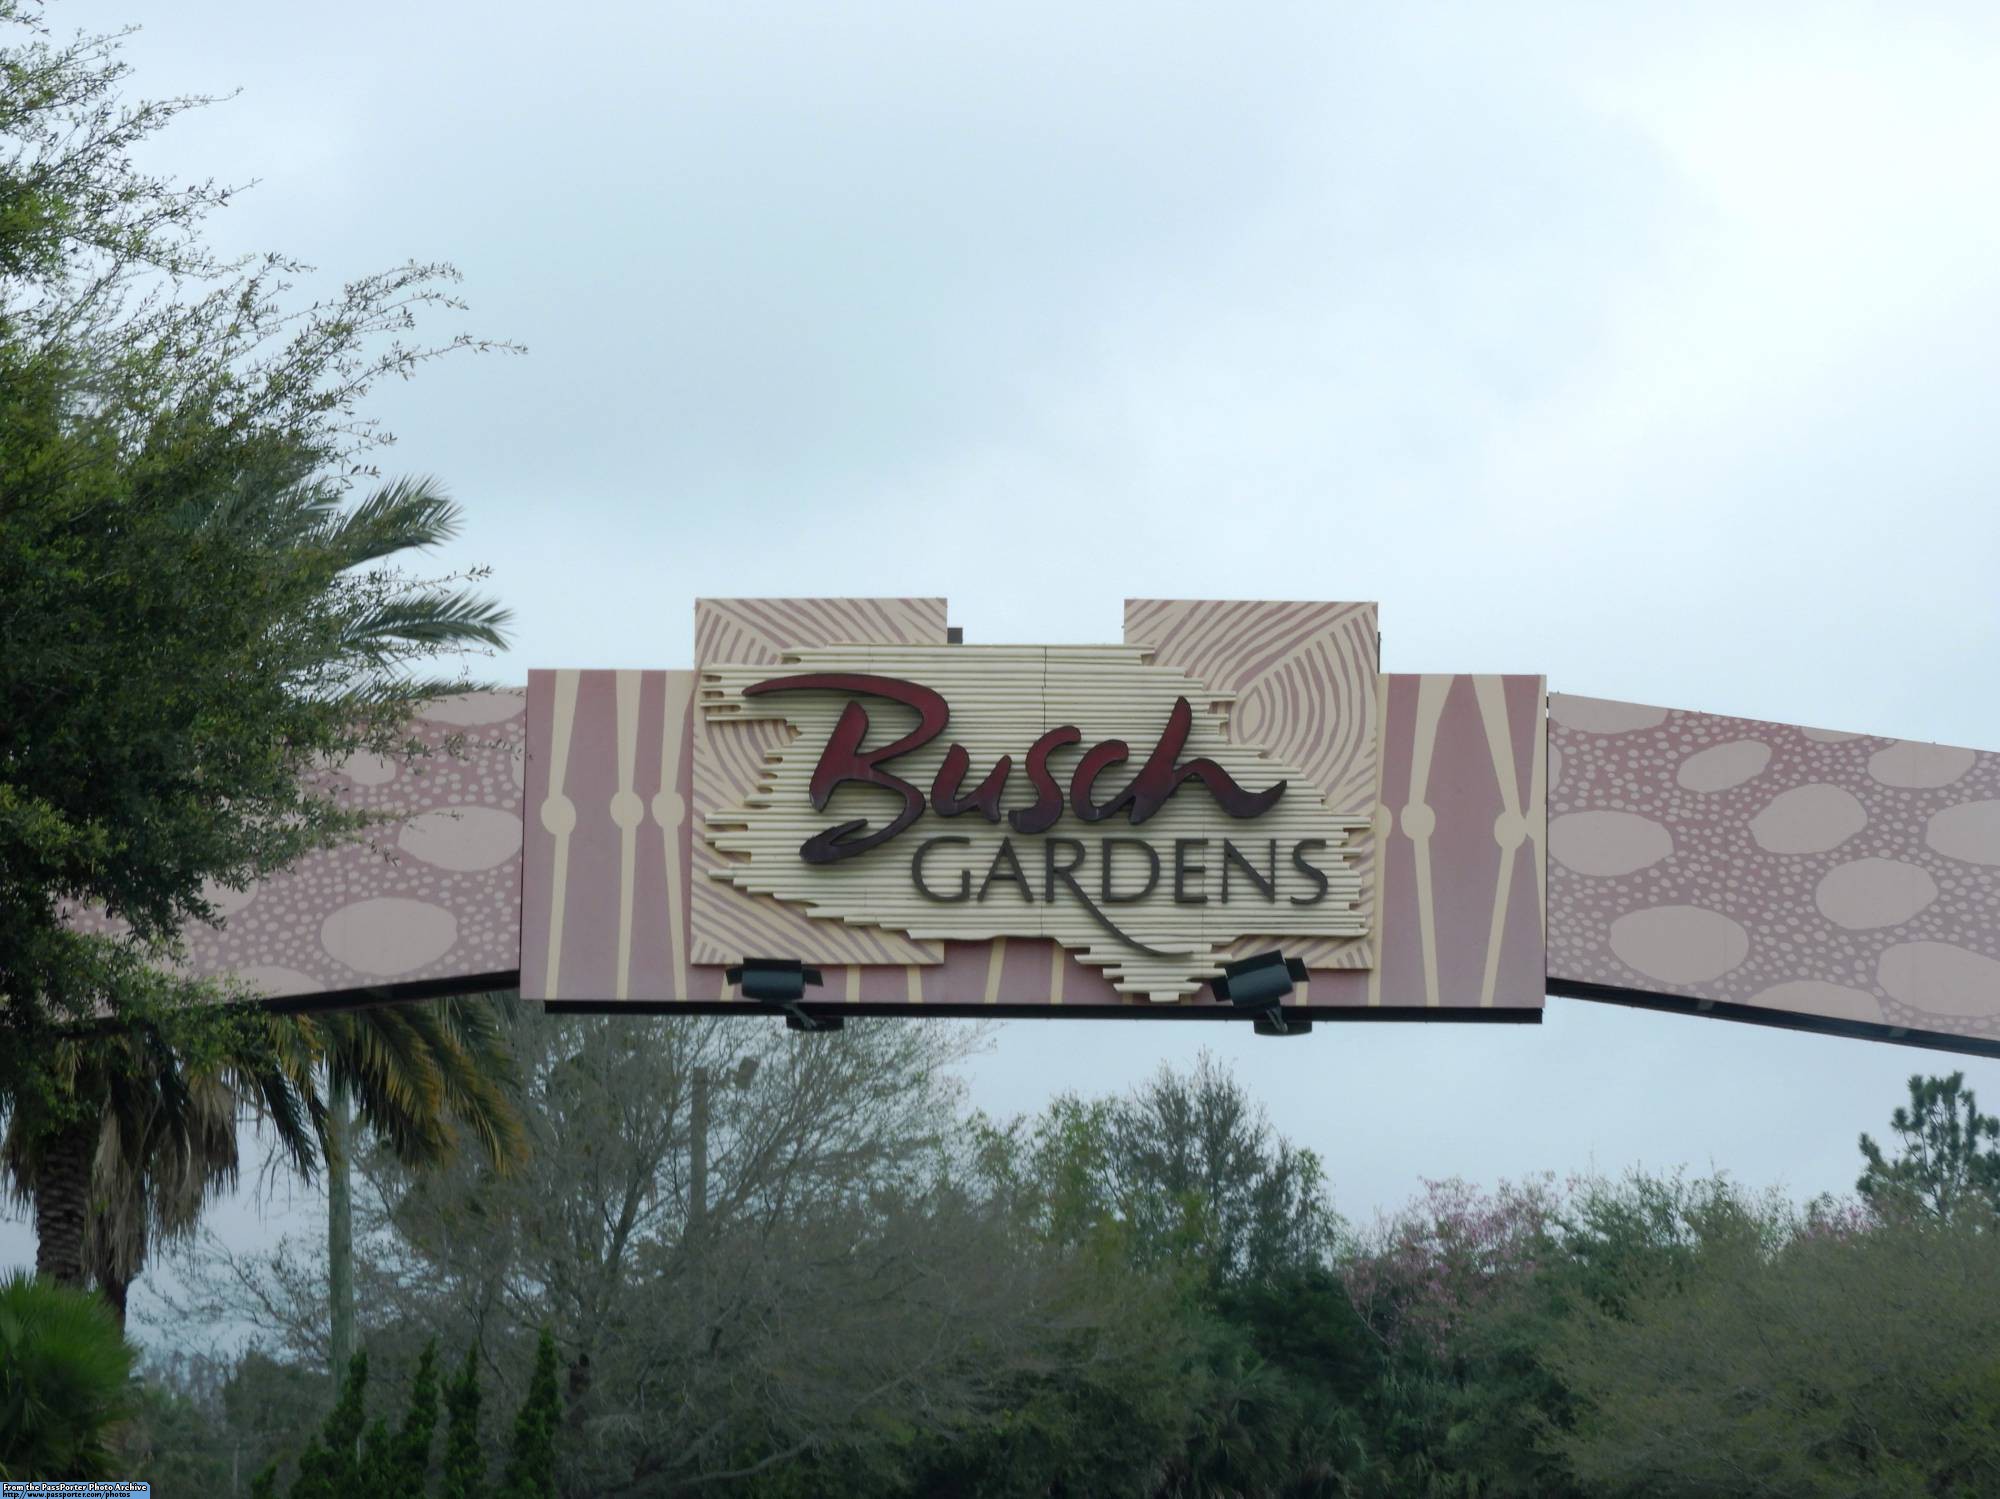 Busch Gardens - parking lot